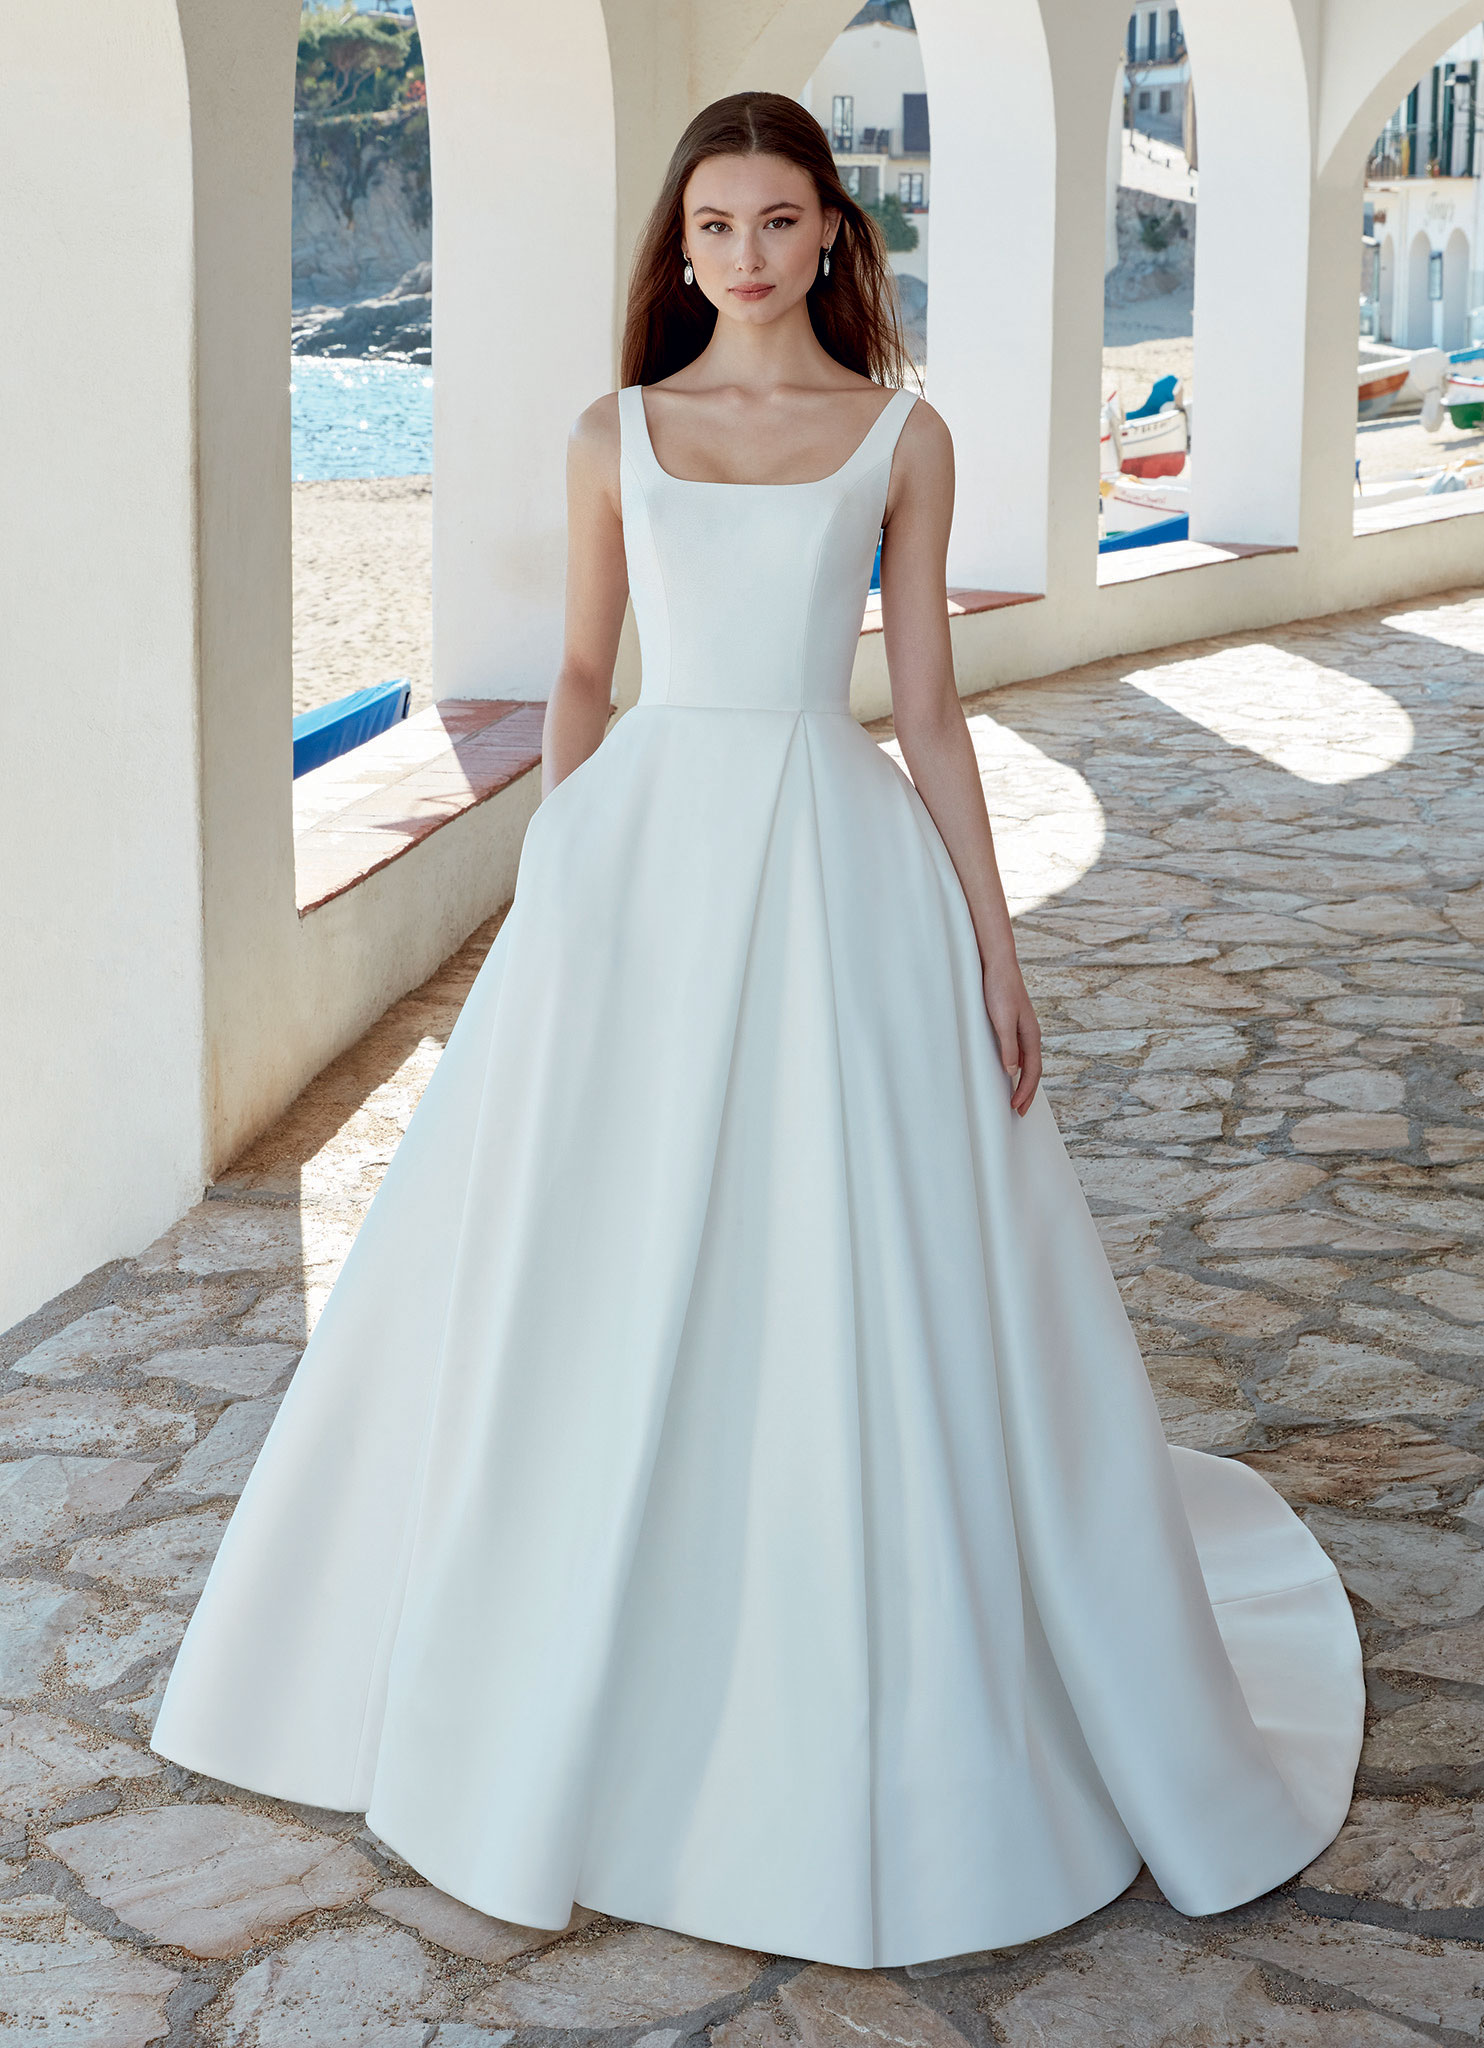 Arlette wedding dress by Enzoani